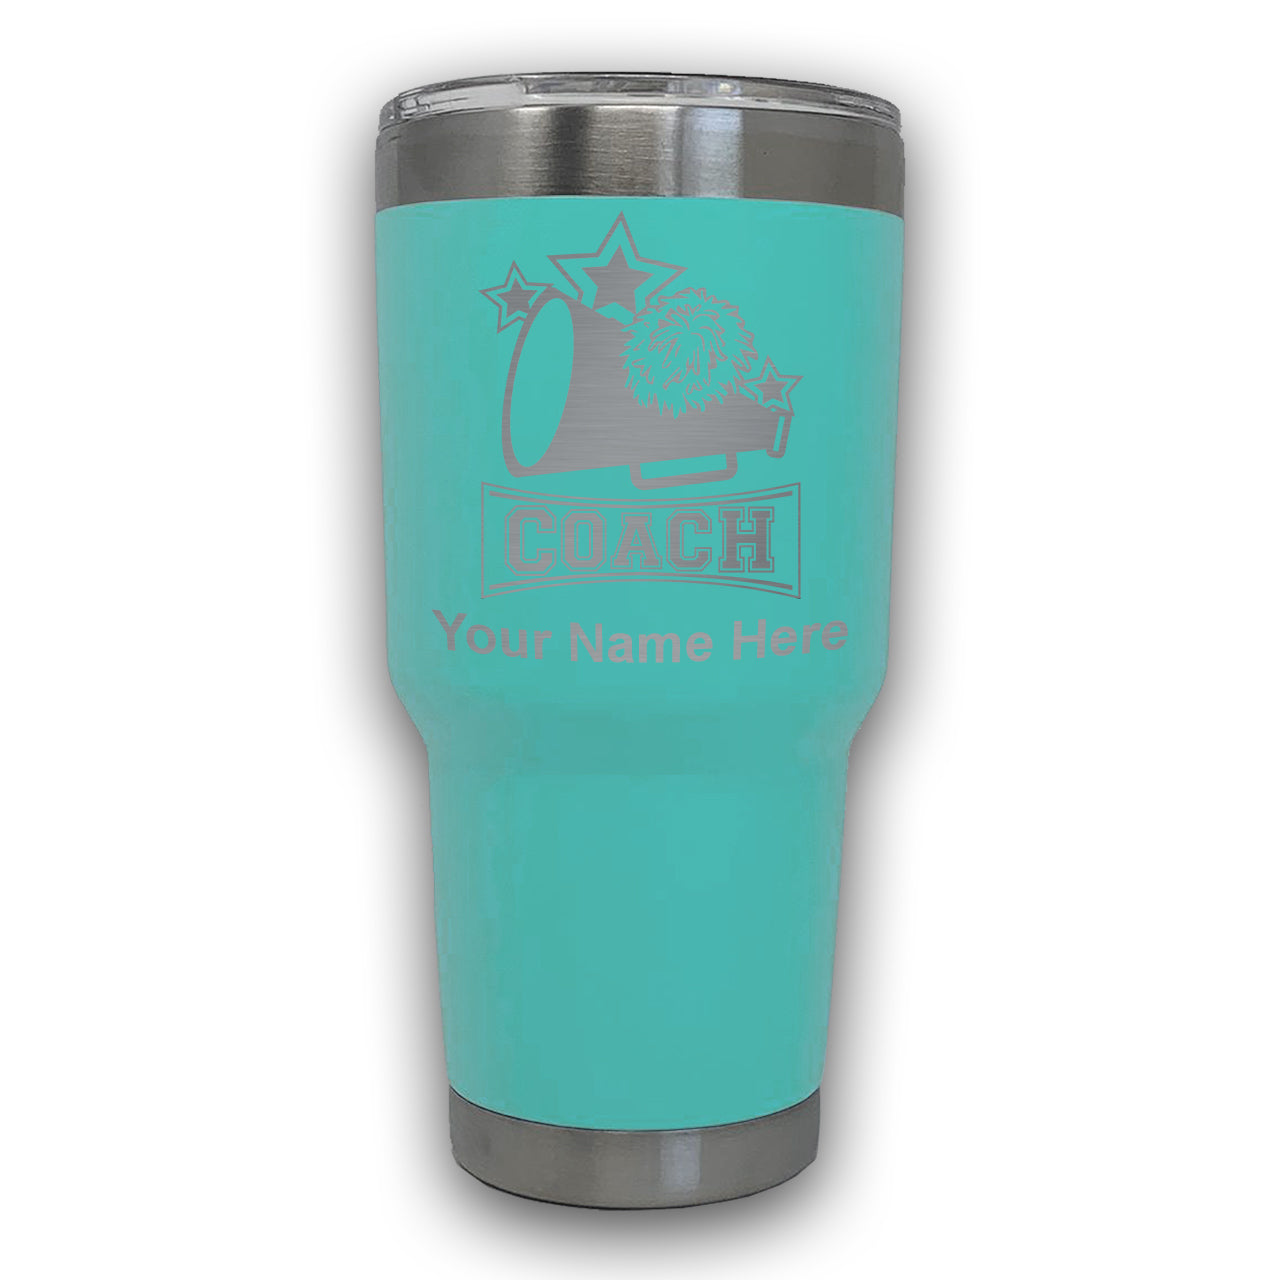 LaserGram 30oz Tumbler Mug, Cheerleading Coach, Personalized Engraving Included